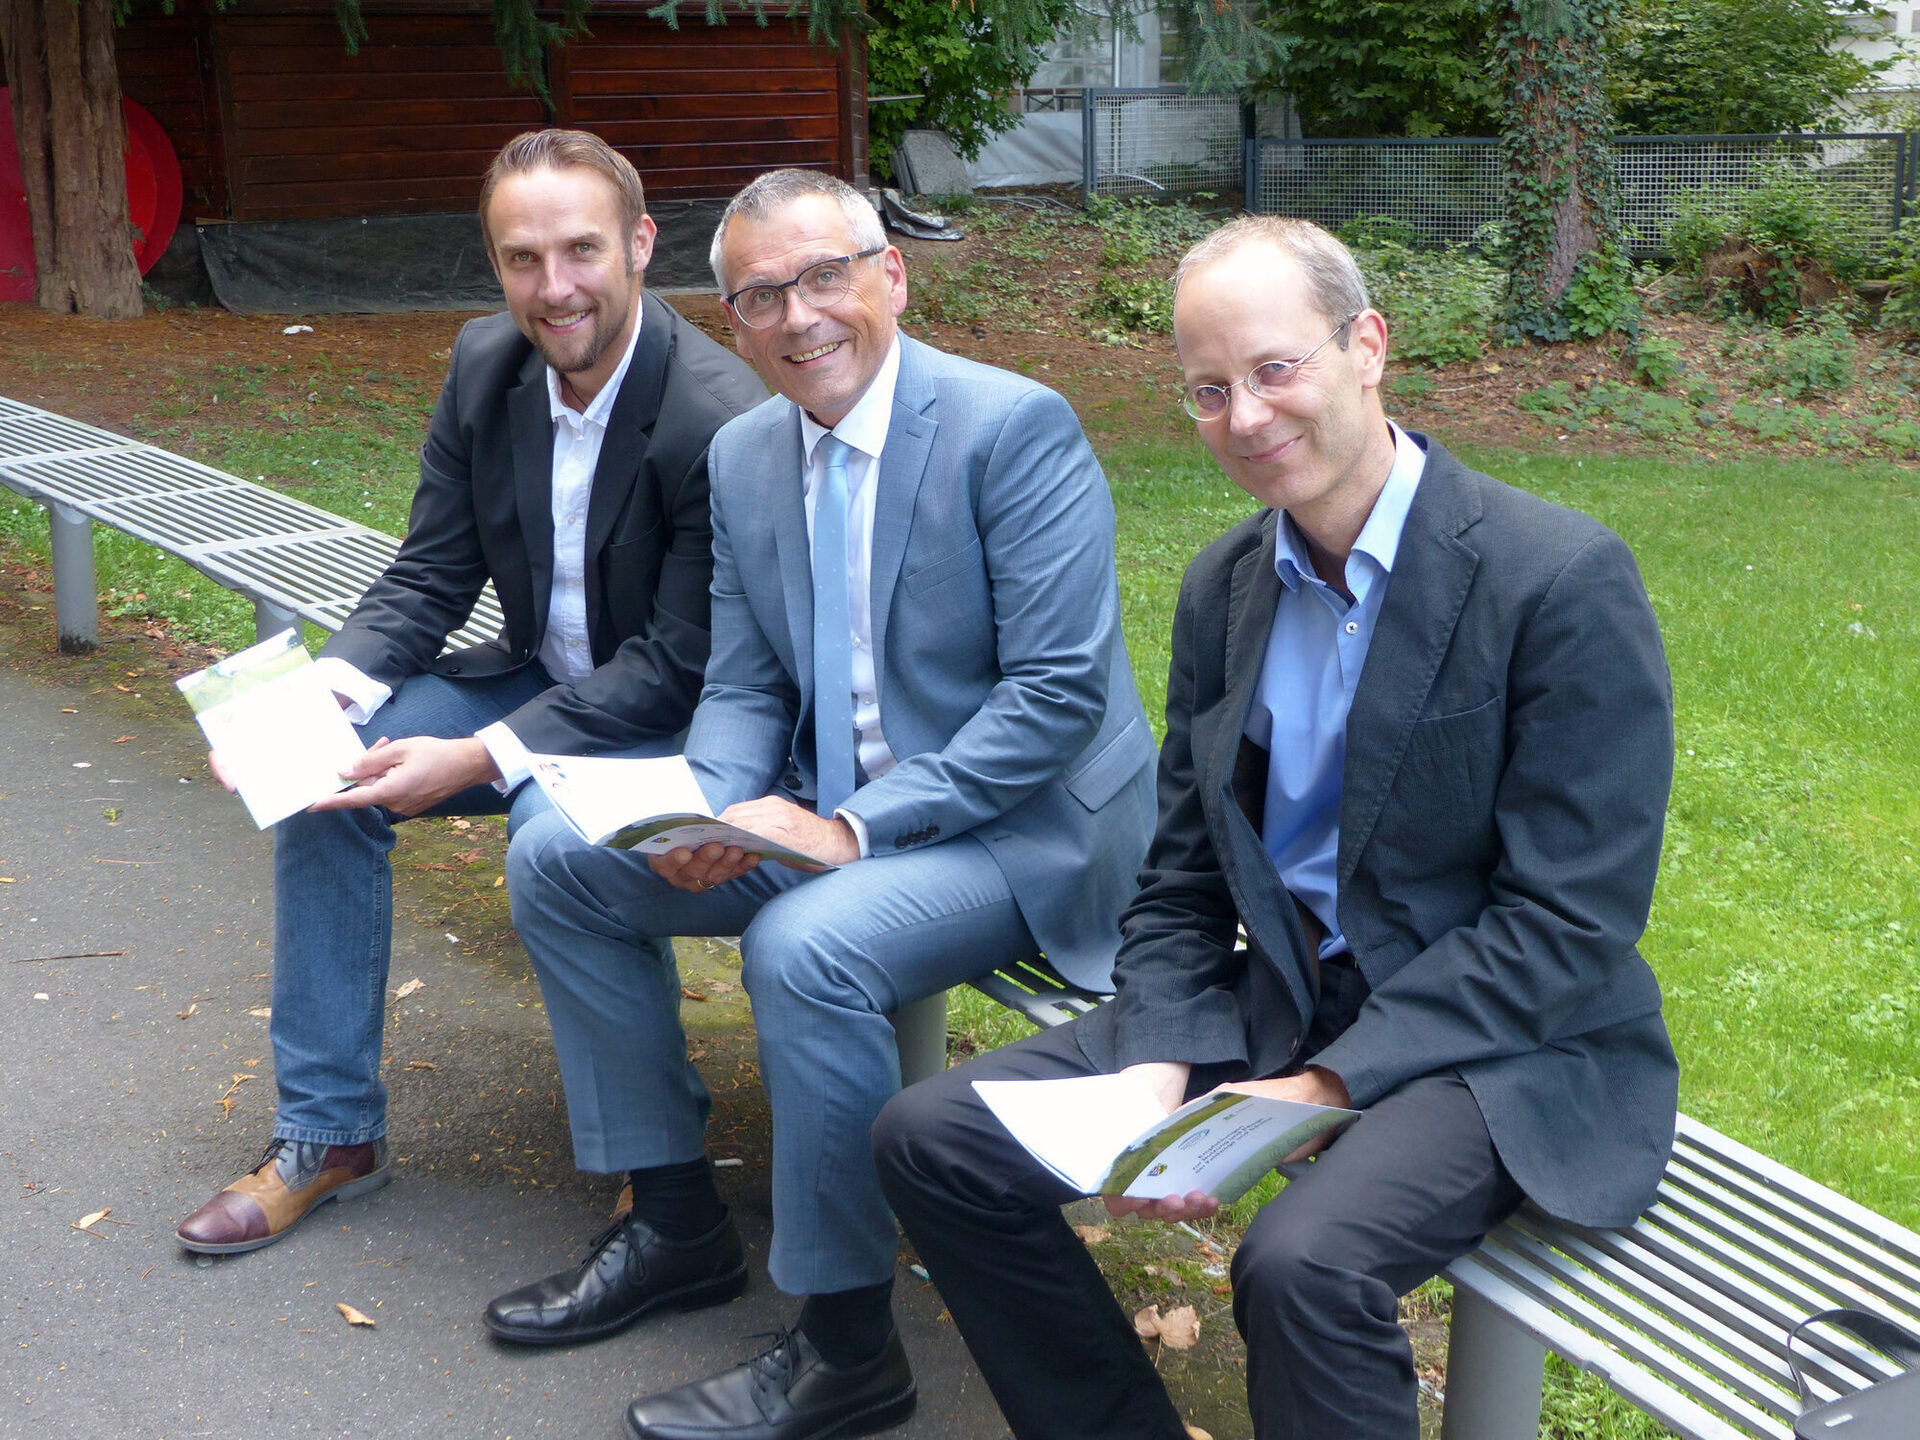 Auf dem Foto sieht man von links nach rechts Kai-Georg Bachmann (Geschäftsführer Zweckverband Raum Kassel), Andreas Siebert (Erster Kreisbeigeordneter) und Dr. Claus Neubeck (Zweckverband Raum Kassel).